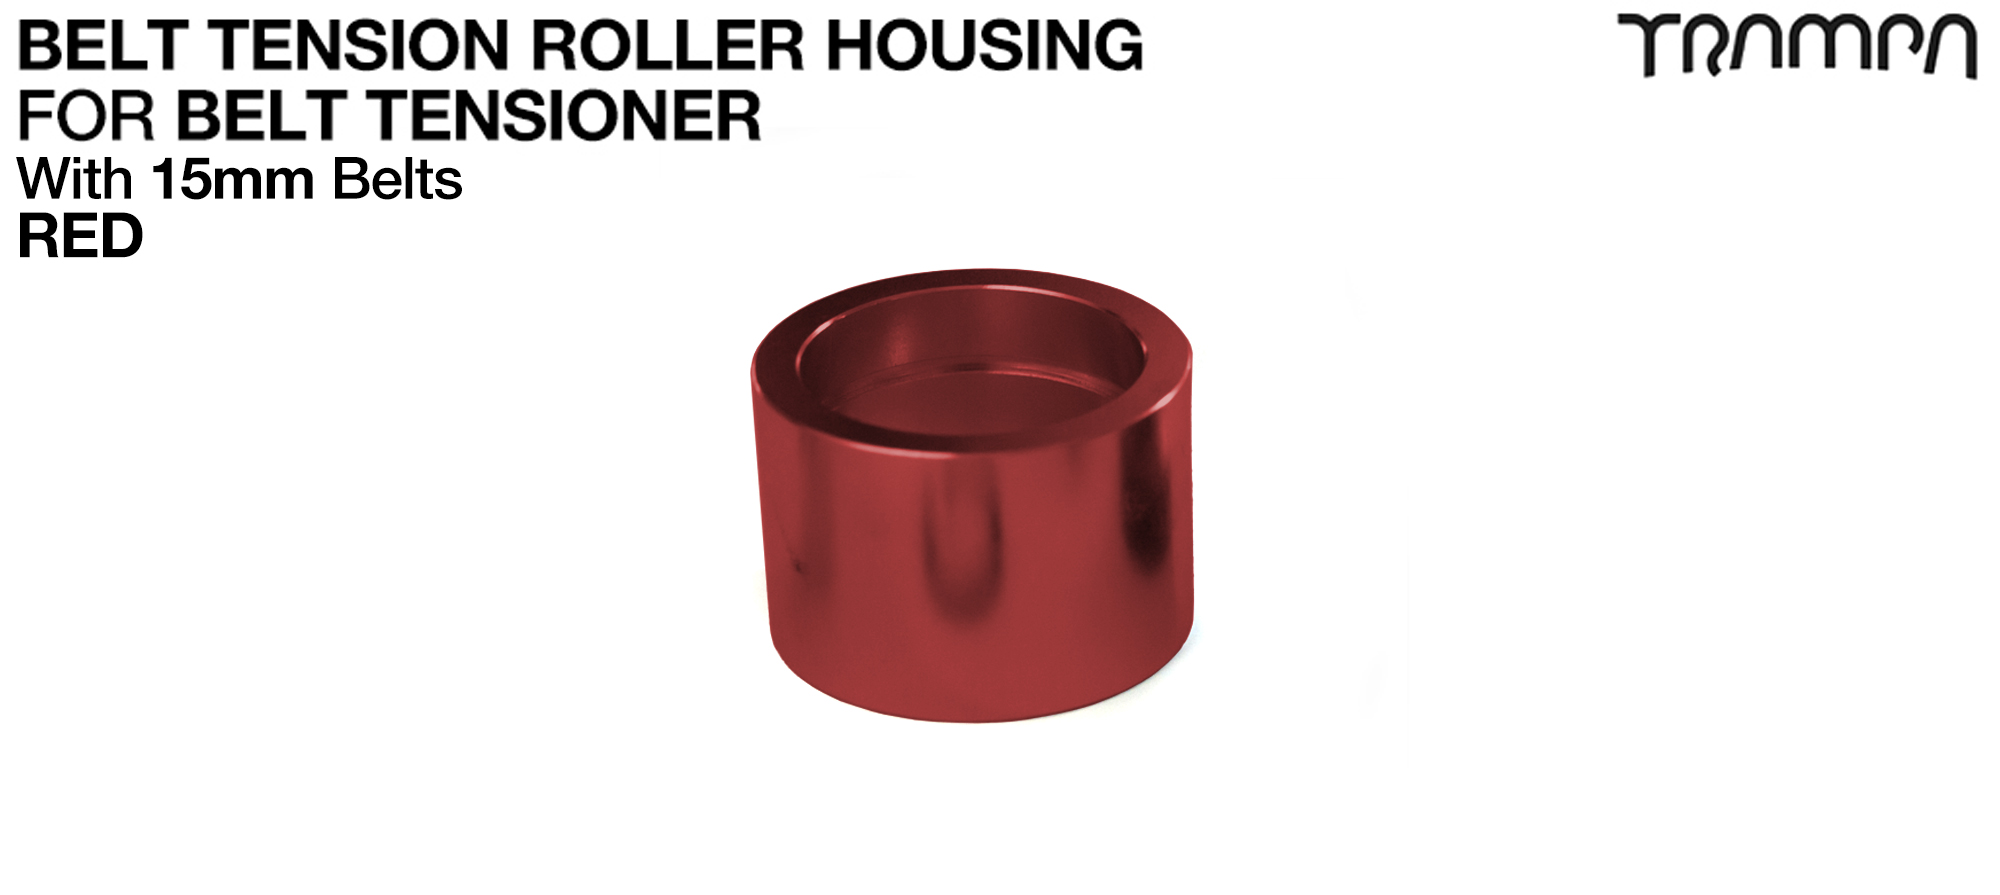 Belt Tension Roller Housing for 15mm Belts - RED